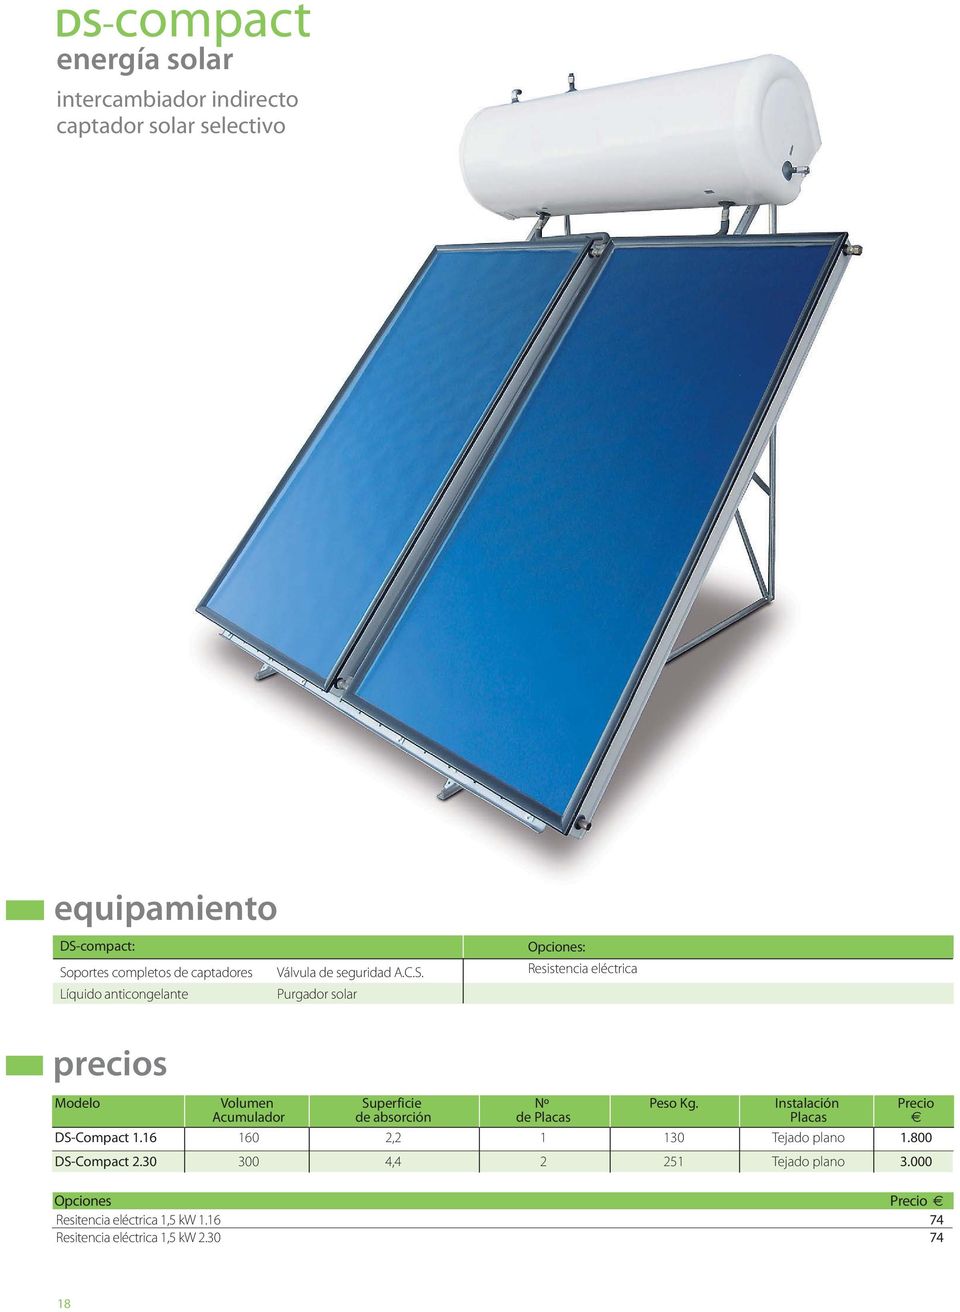 Líquido anticongelante Purgador solar Opciones: Resistencia eléctrica precios Modelo Volumen Superficie Nº Peso Kg.